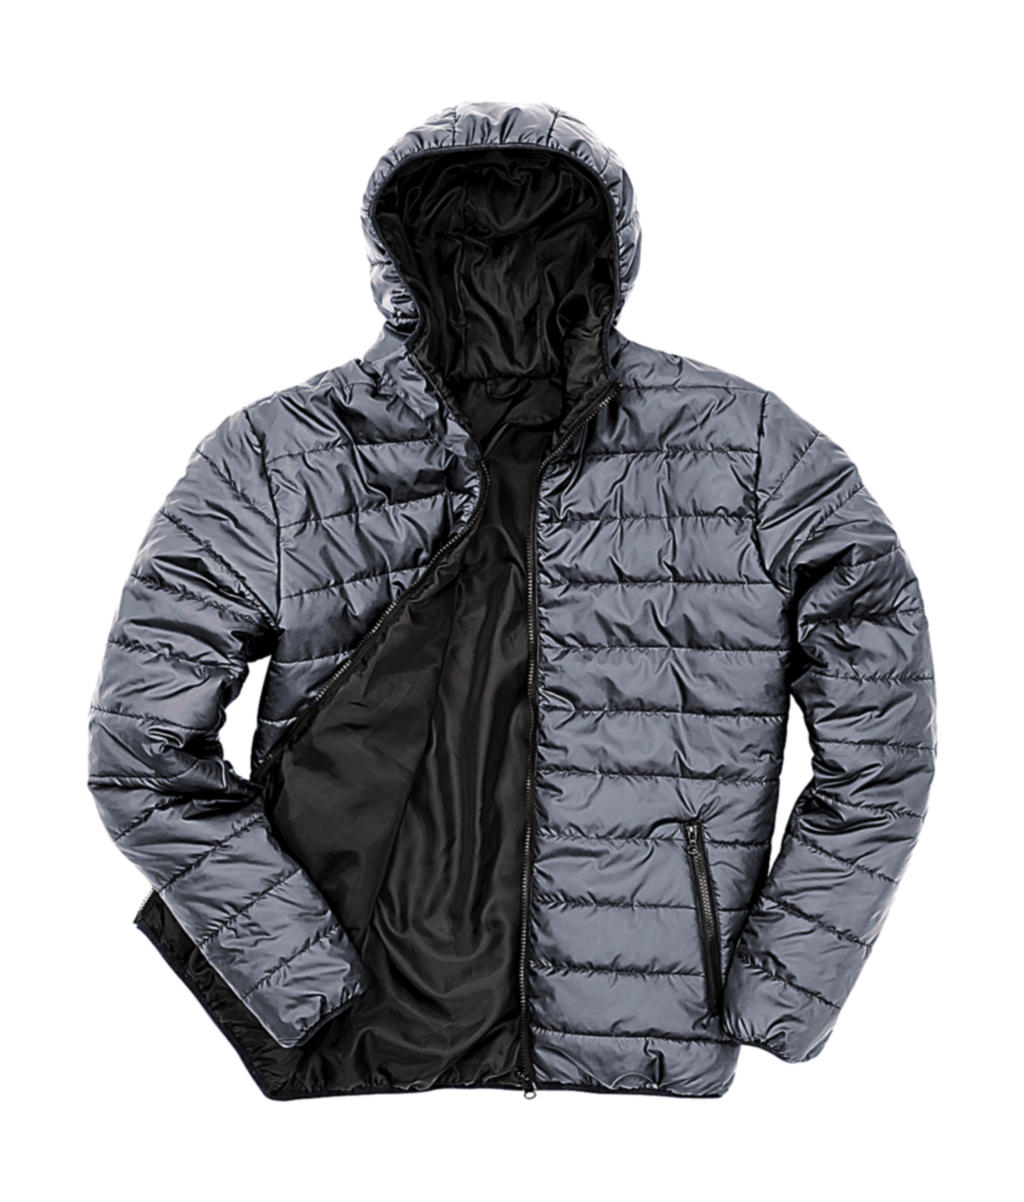 Pánská polstrovaná bunda Result s kapucí Velikost: XS, Barva: Frost Grey/Black